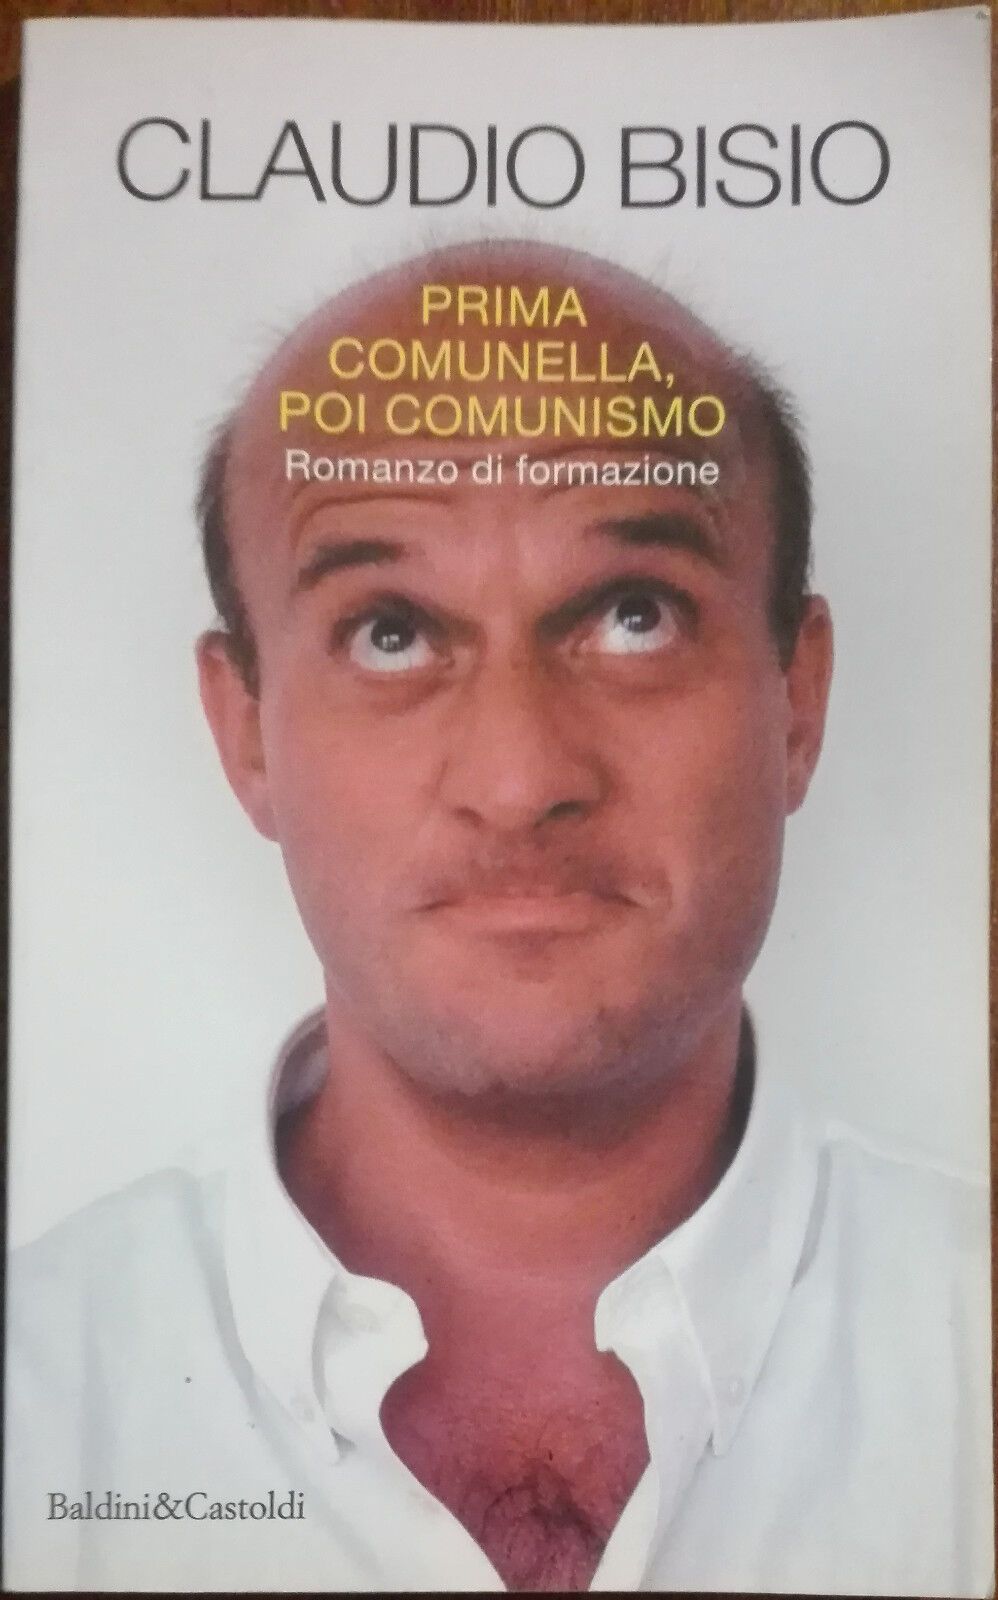 Prima comunella, poi comunismo - Claudio Bisio - Baldini&Castoldi,1996 - A